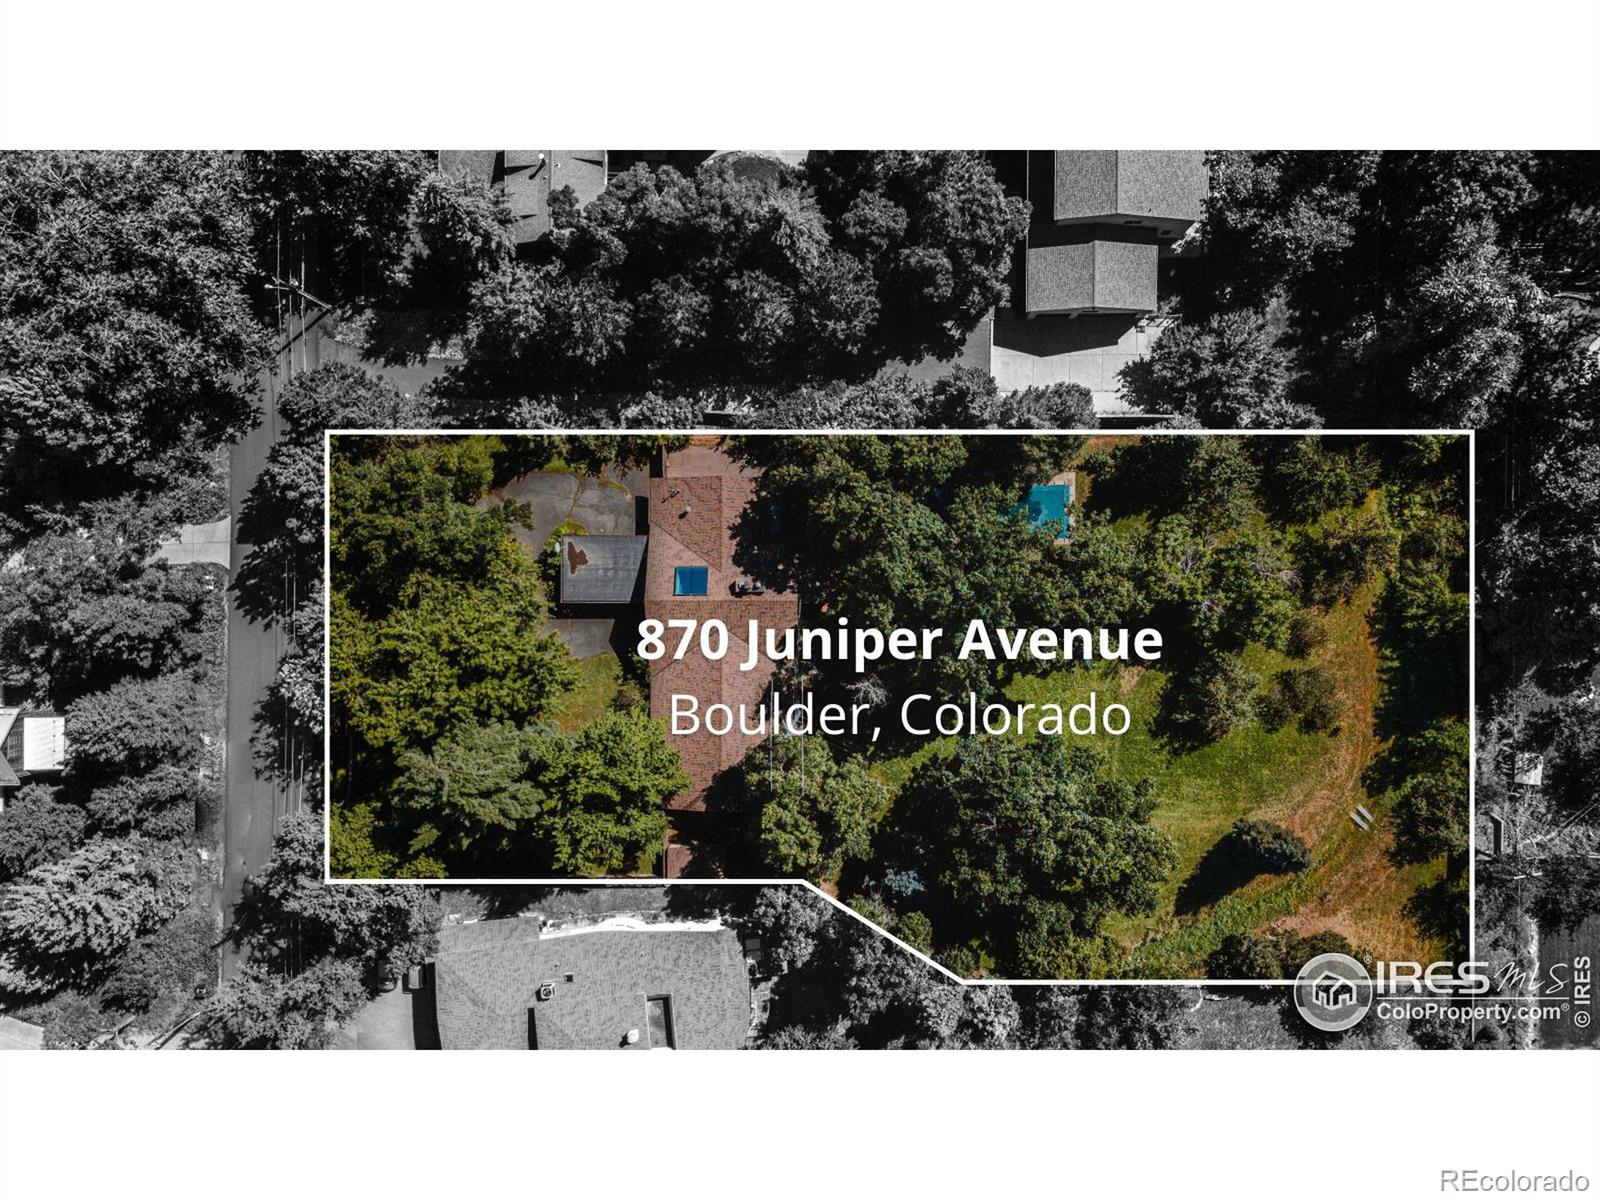 MLS Image #33 for 870  juniper avenue,boulder, Colorado